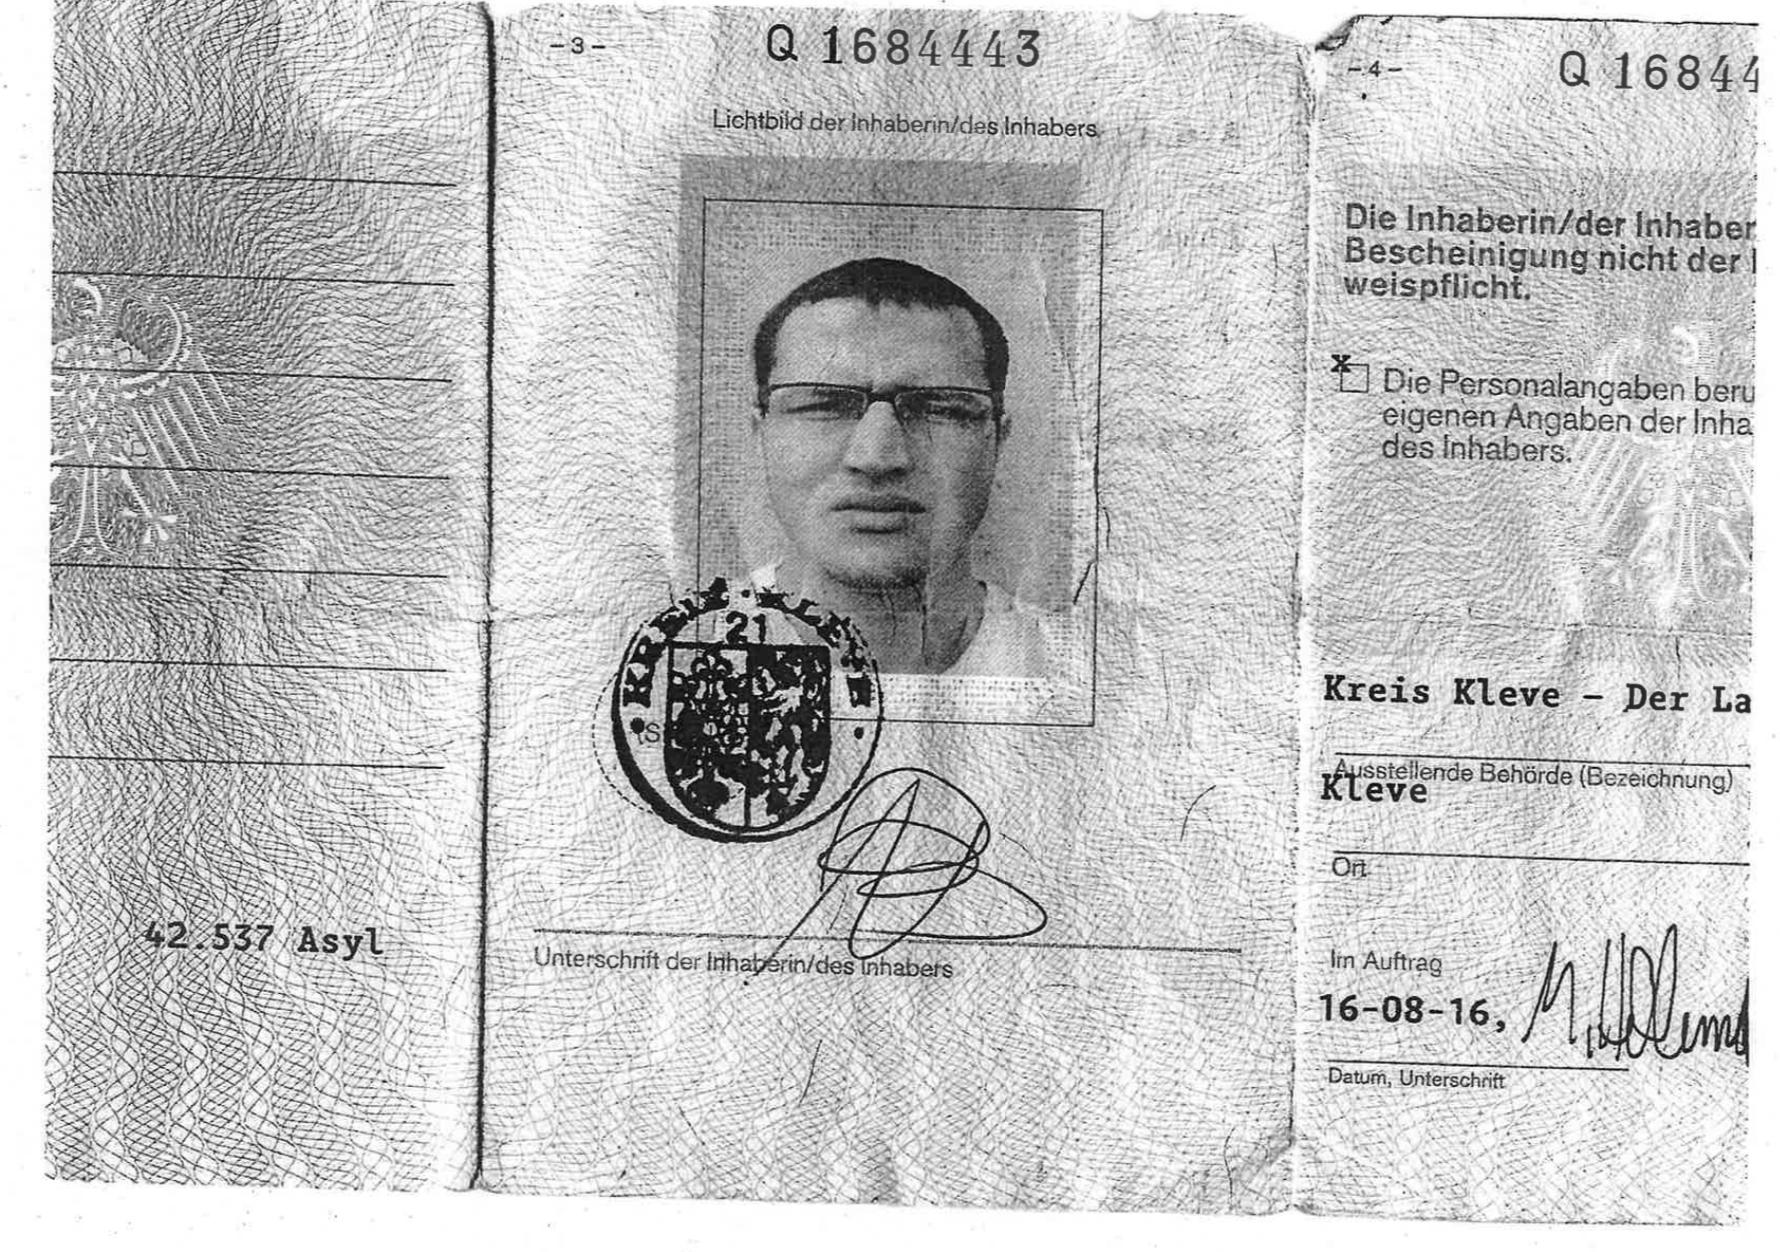 Beweisfoto des Portemonnaies von Amis Amri | Florian Flade, WDR 